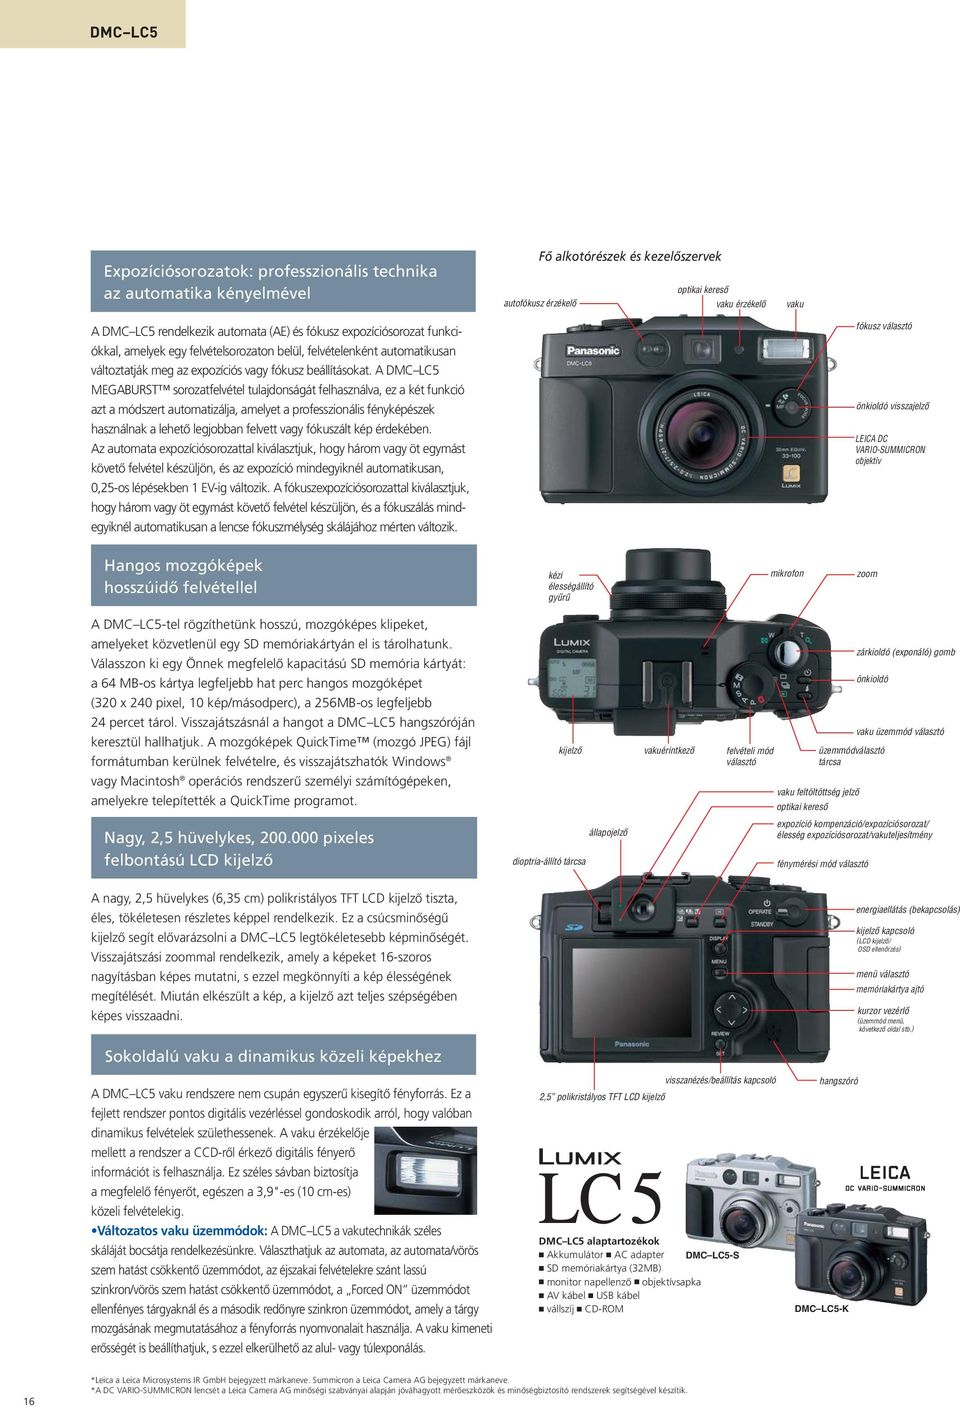 A DMC LC5 MEGABURST sorozatfelvétel tulajdonságát felhasználva, ez a két funkció azt a módszert automatizálja, amelyet a professzionális fényképészek használnak a lehetõ legjobban felvett vagy